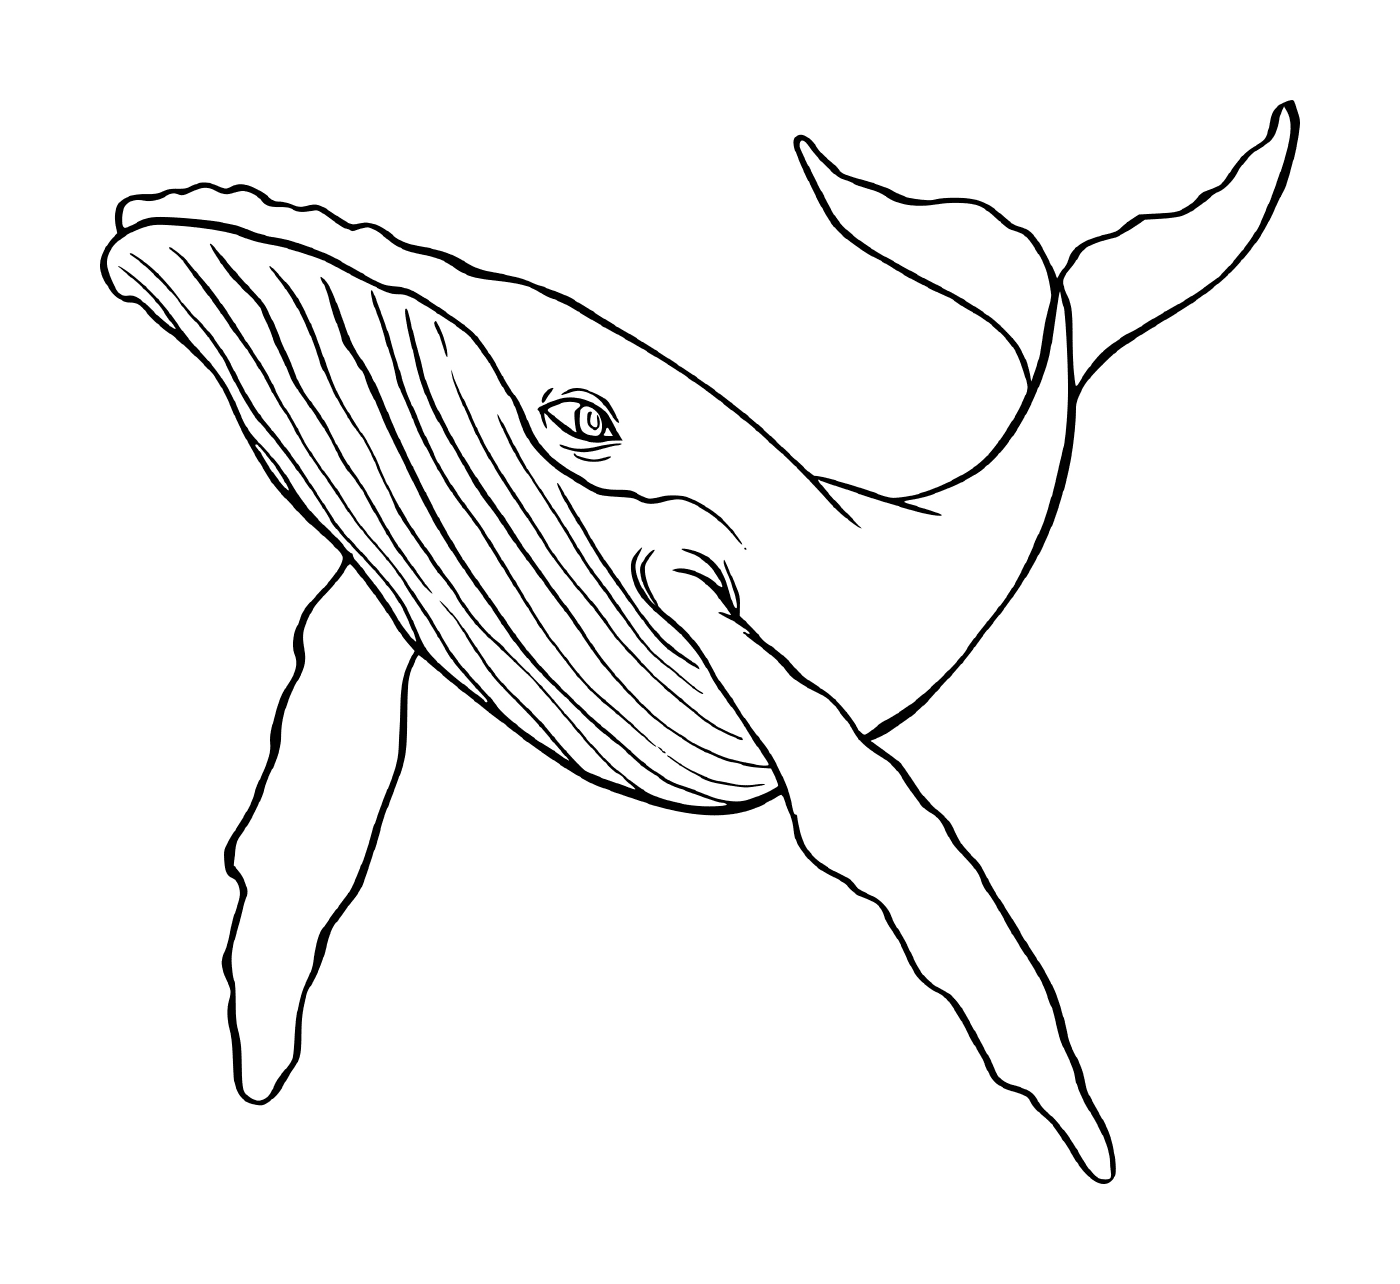  кит плавает в воде 